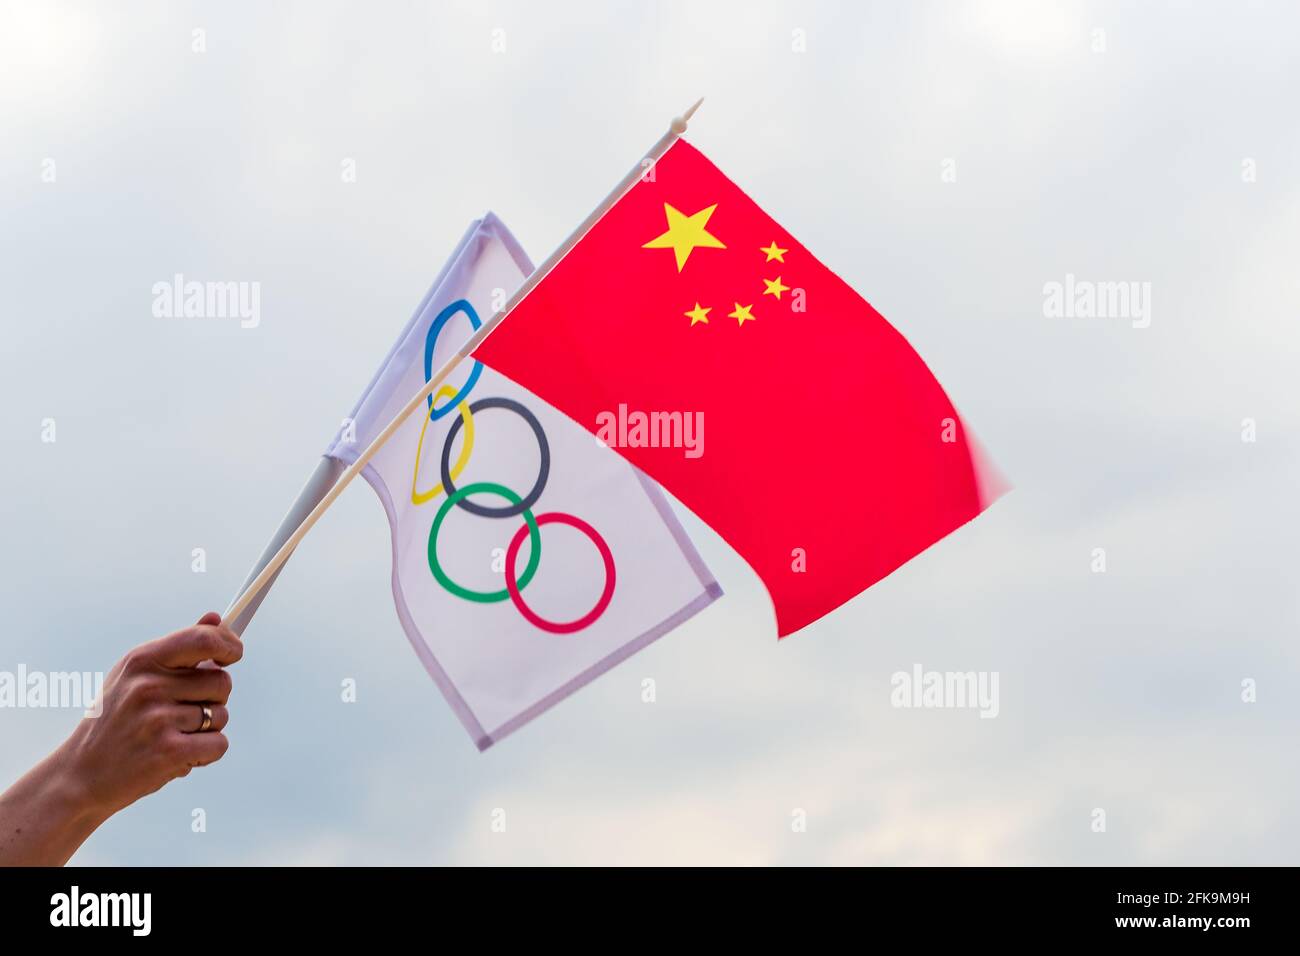 Fan signe le drapeau national de la Chine et le drapeau olympique avec le symbole jeux olympiques anneaux. Banque D'Images